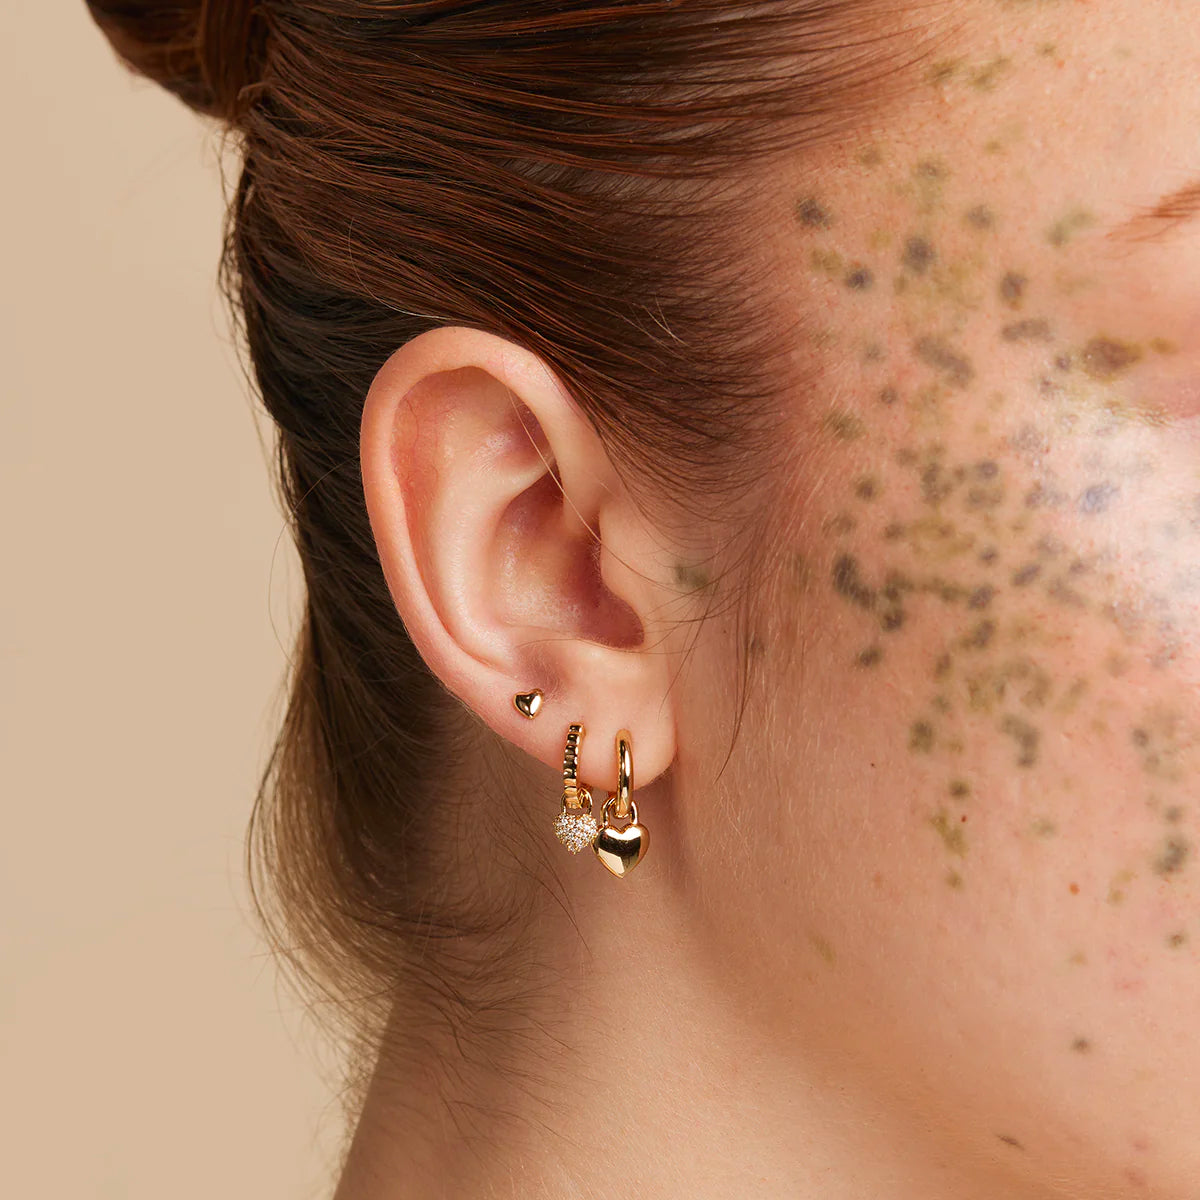 Enchanted Vines - Rose Gold Earring – Erin's $5 Splurge